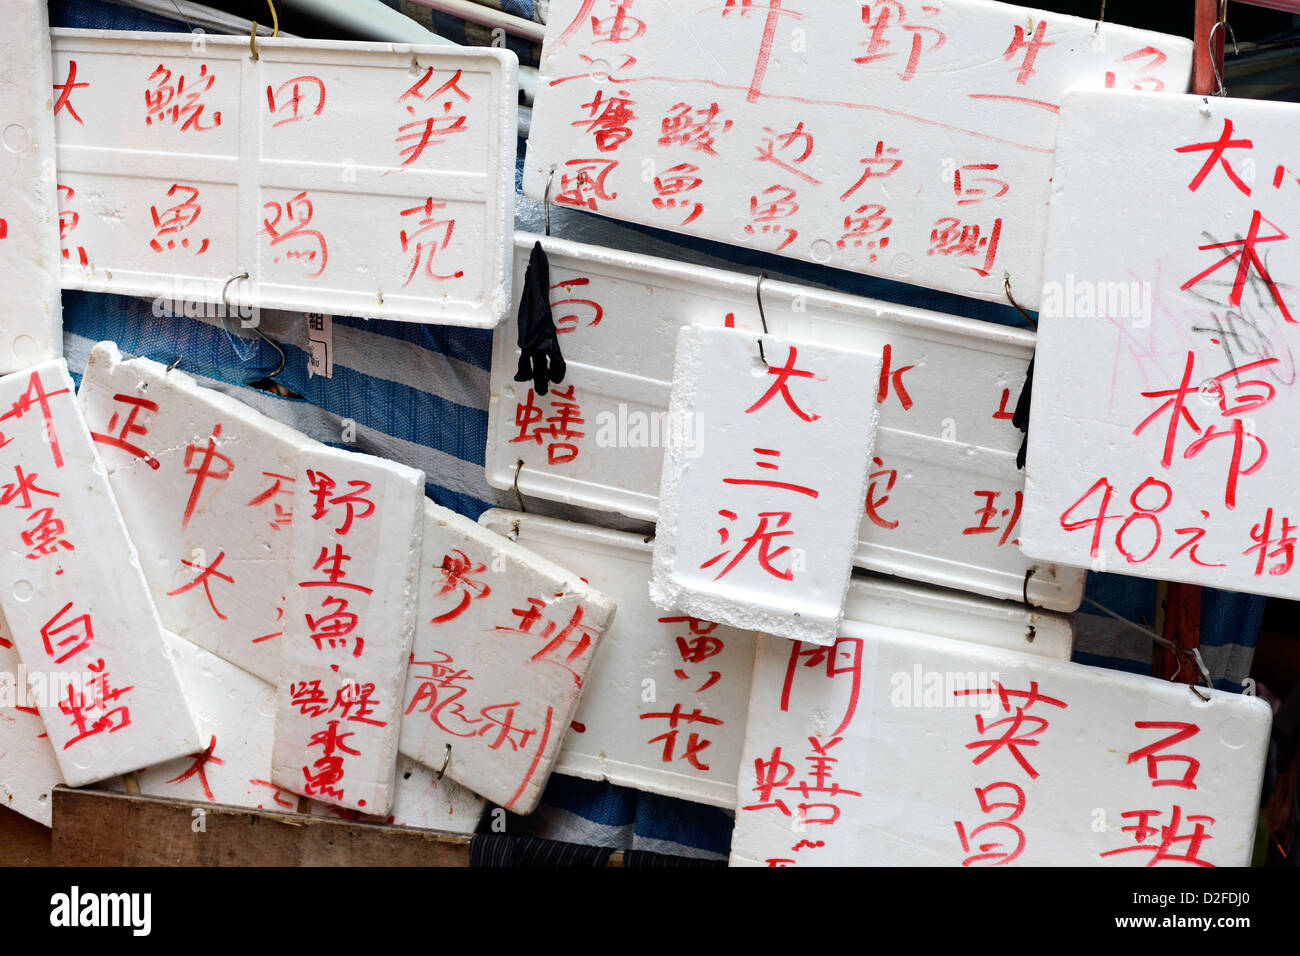 Hong Kong, China, Chinese characters written on Styrofoam plates Stock Photo